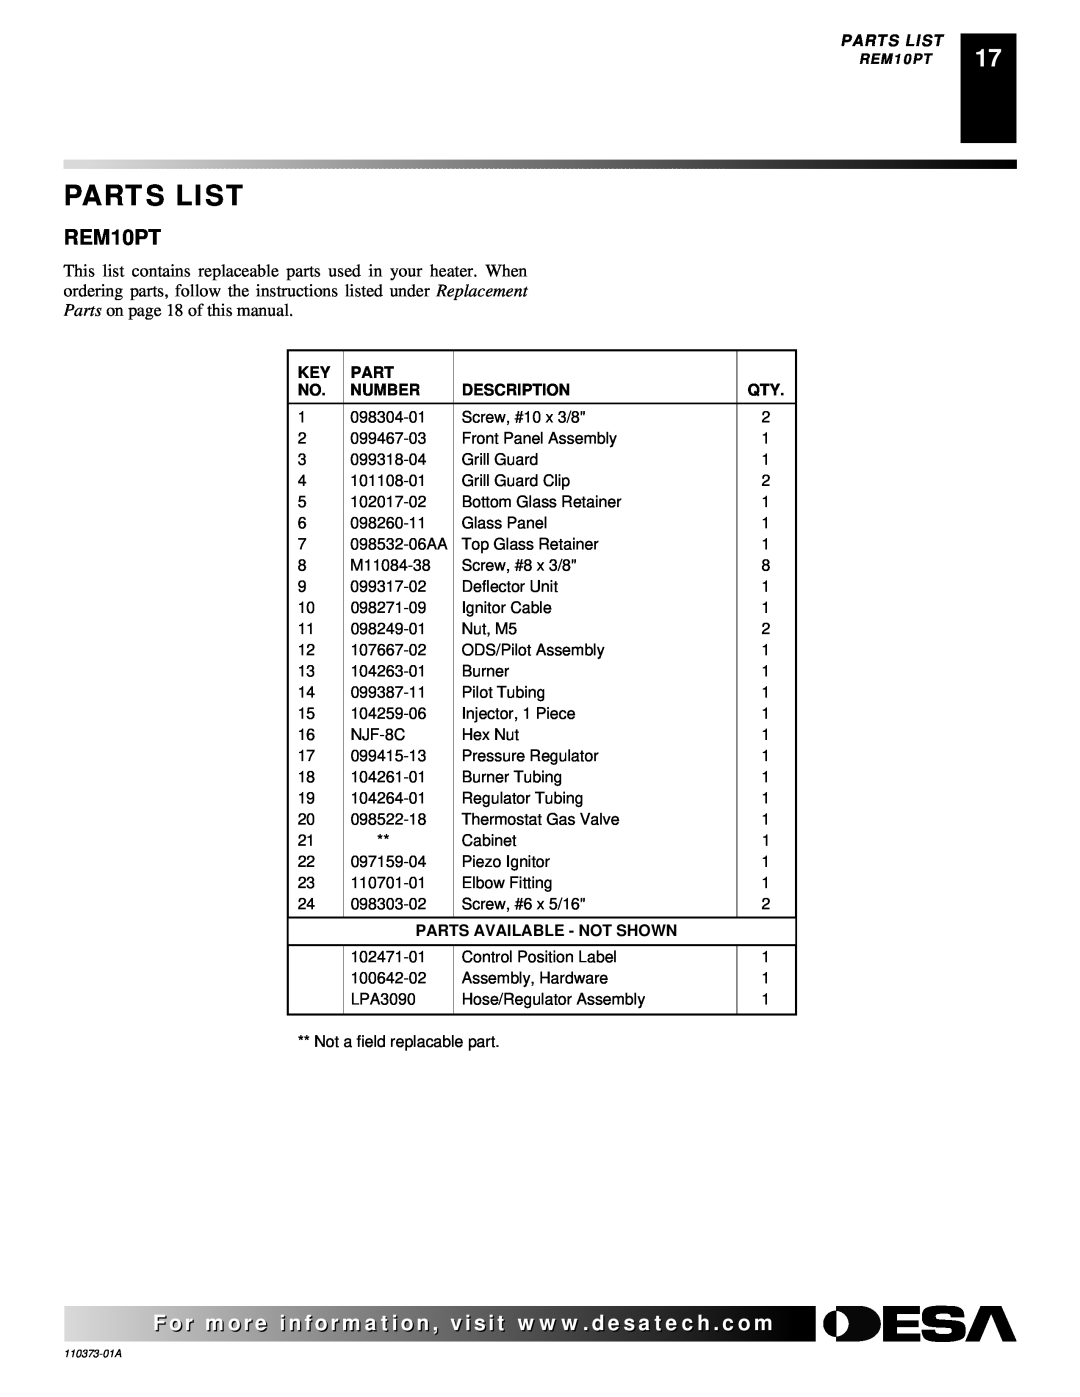 Desa REM10PT installation manual Parts List, Number, Description, Parts Available - Not Shown 